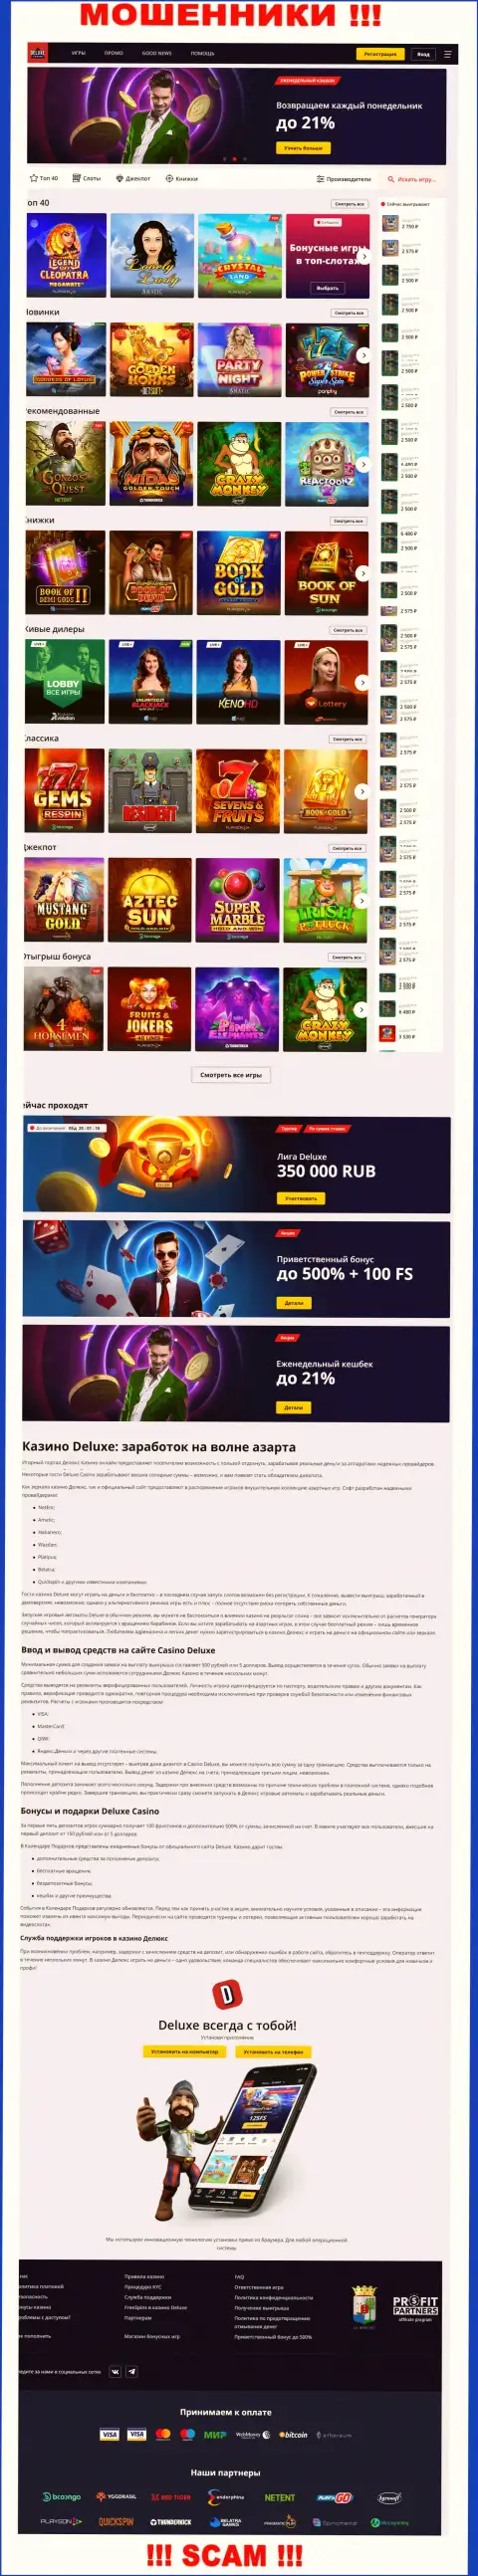 Официальная internet-страница организации Deluxe Casino